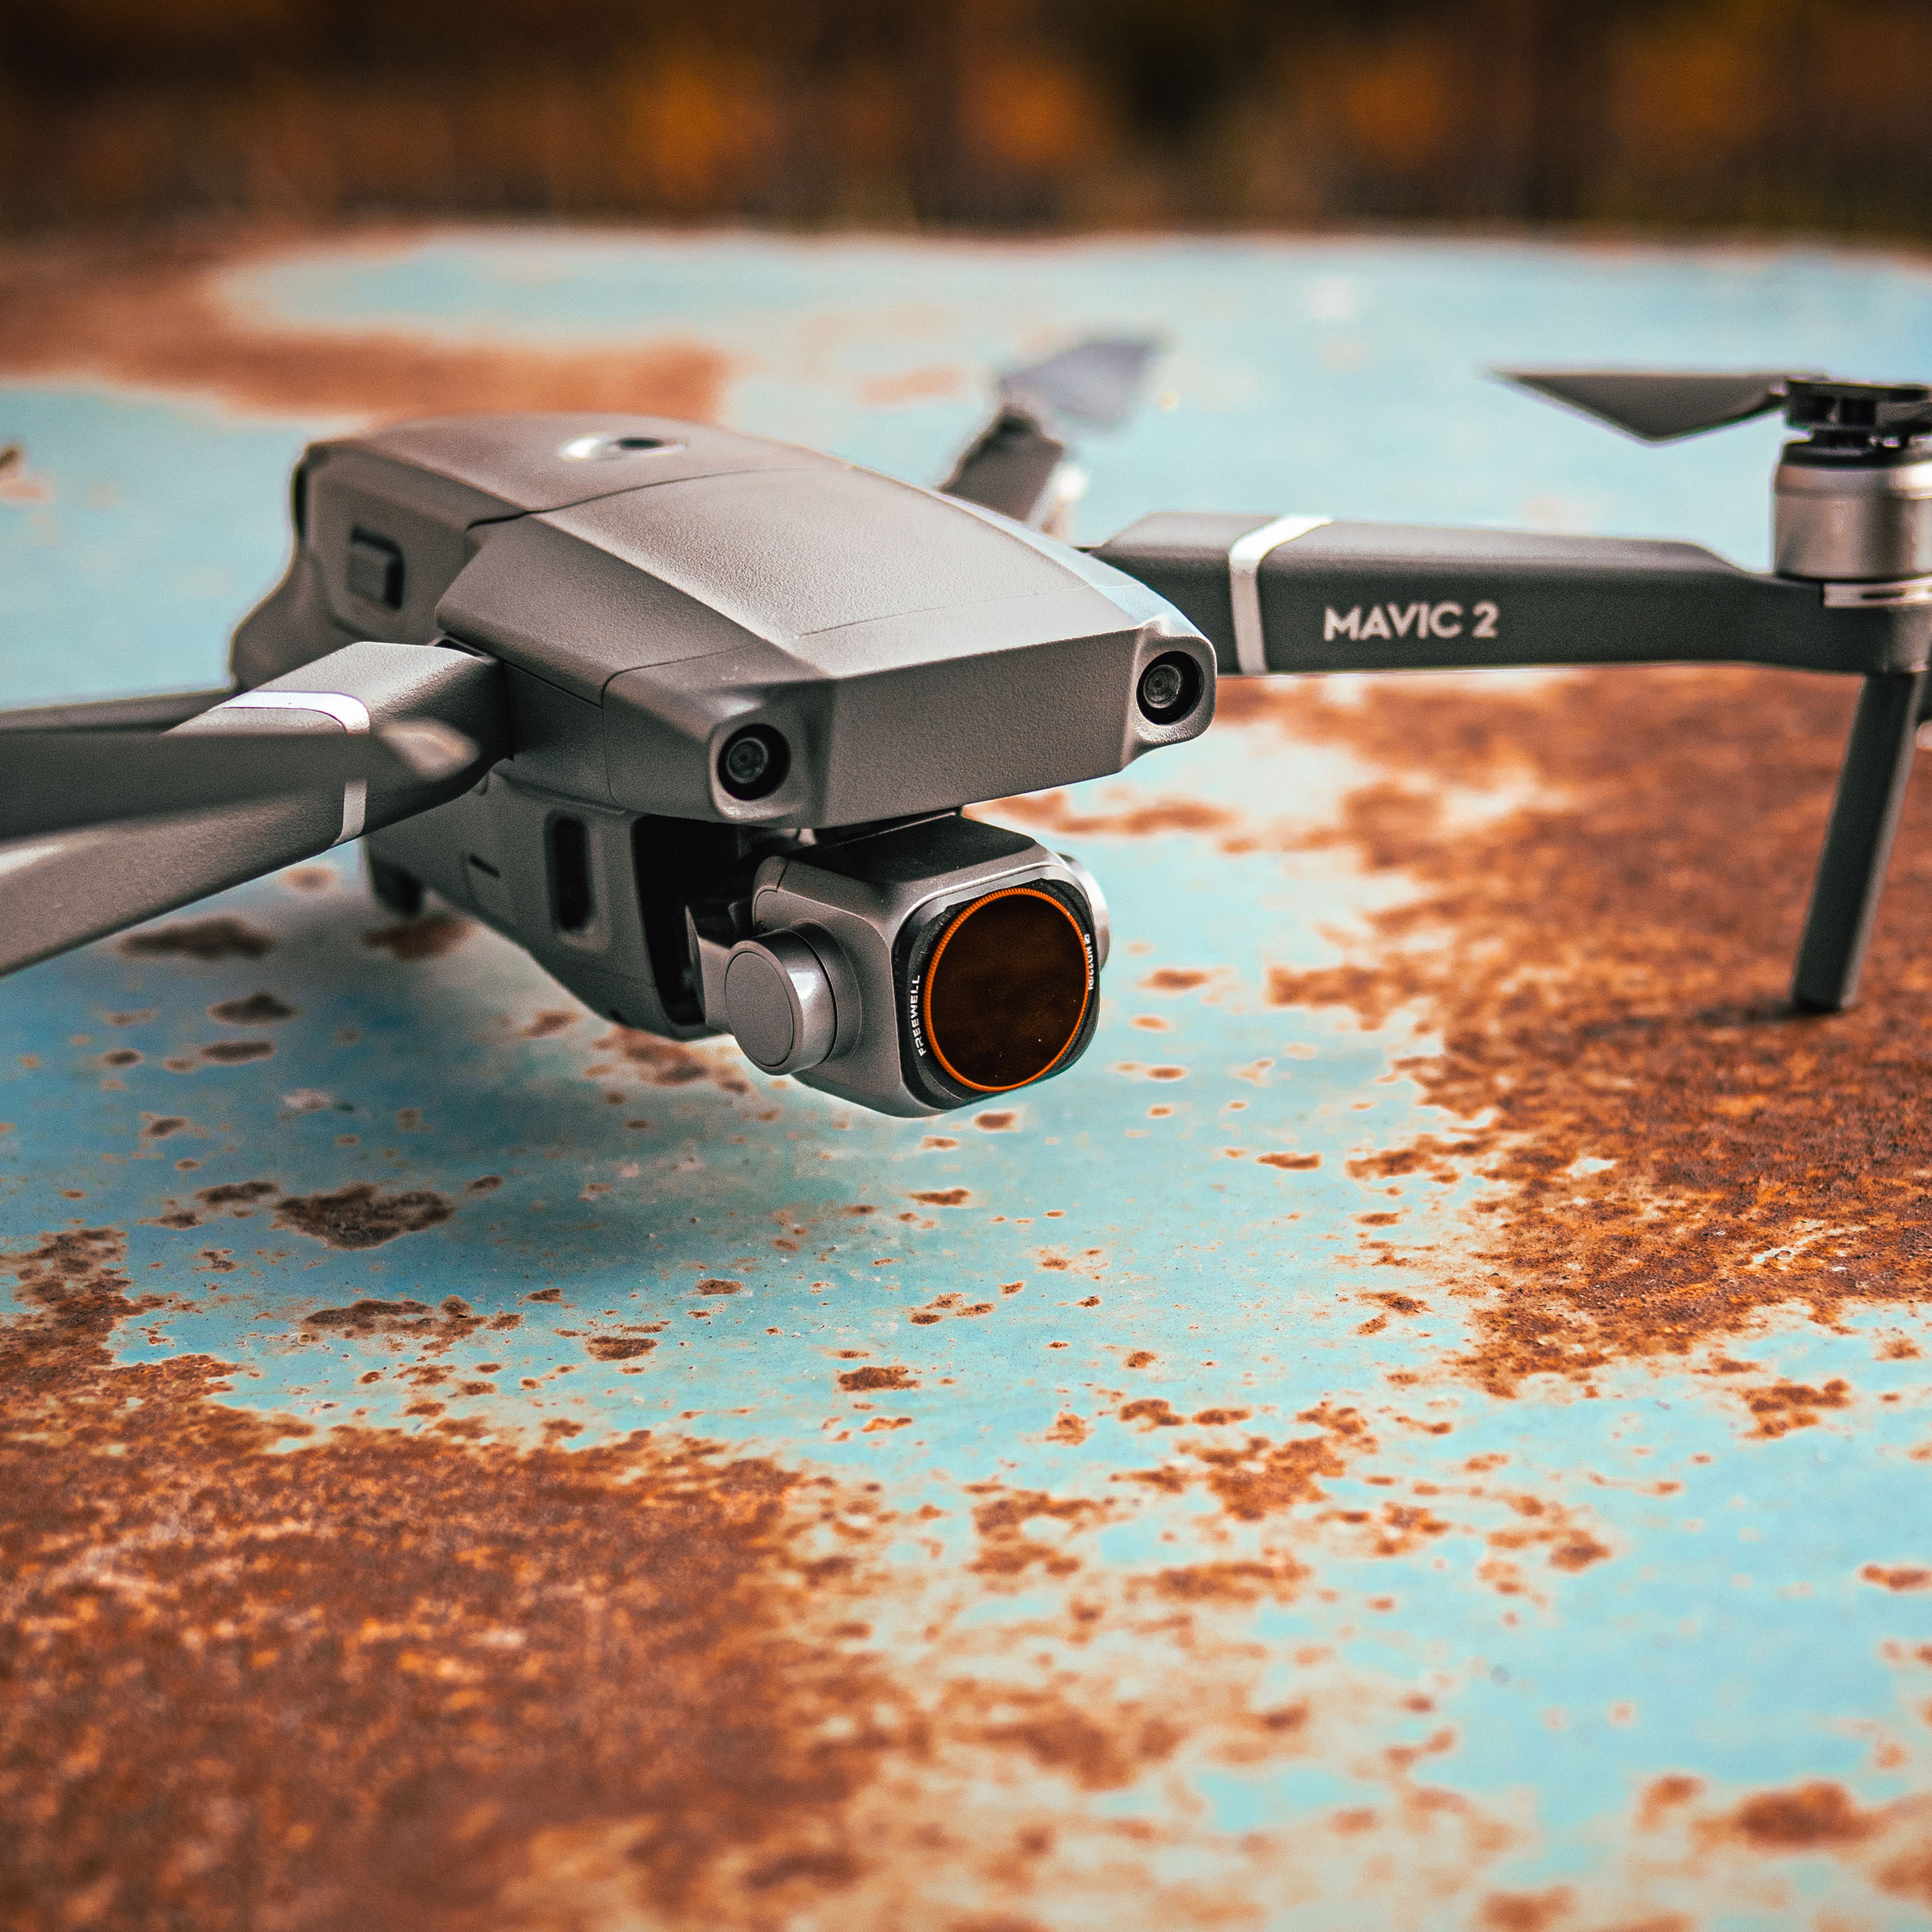 produktová fotografia dronu